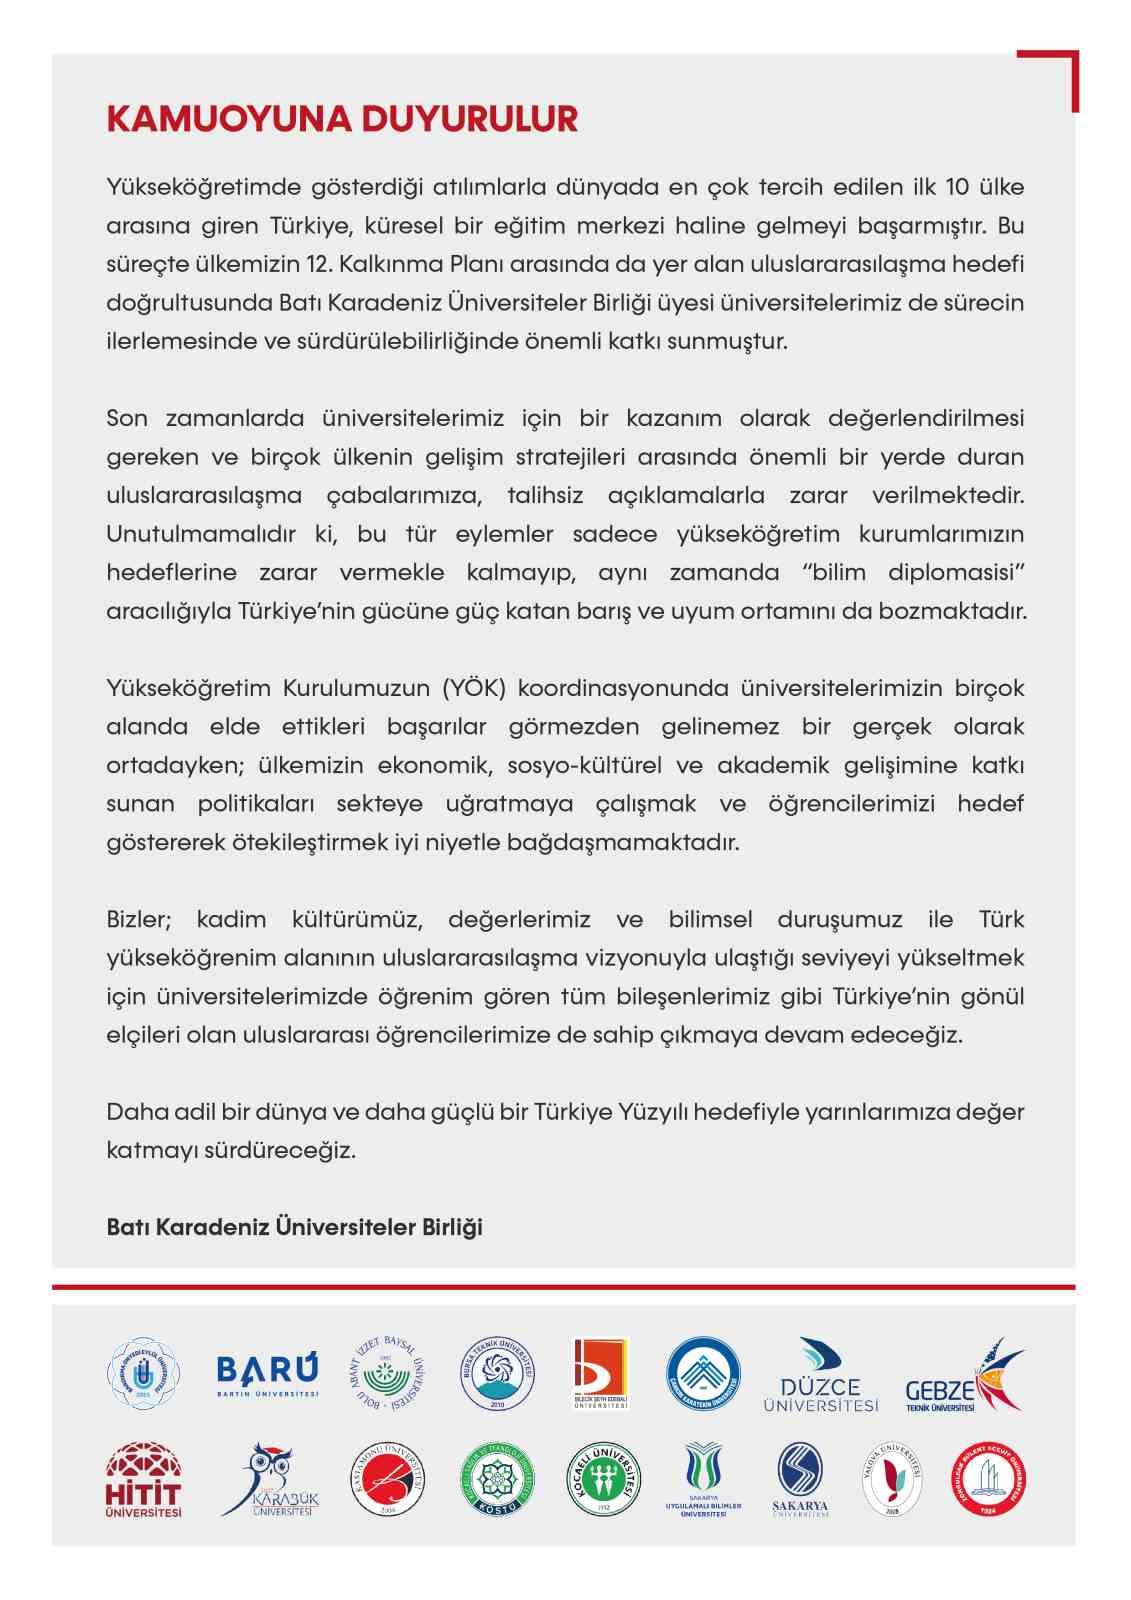 17 üniversiteden ortak bildiri: "Türkiye’nin gönül elçileri uluslararası öğrencilerimize sahip çıkmaya devam edeceğiz"